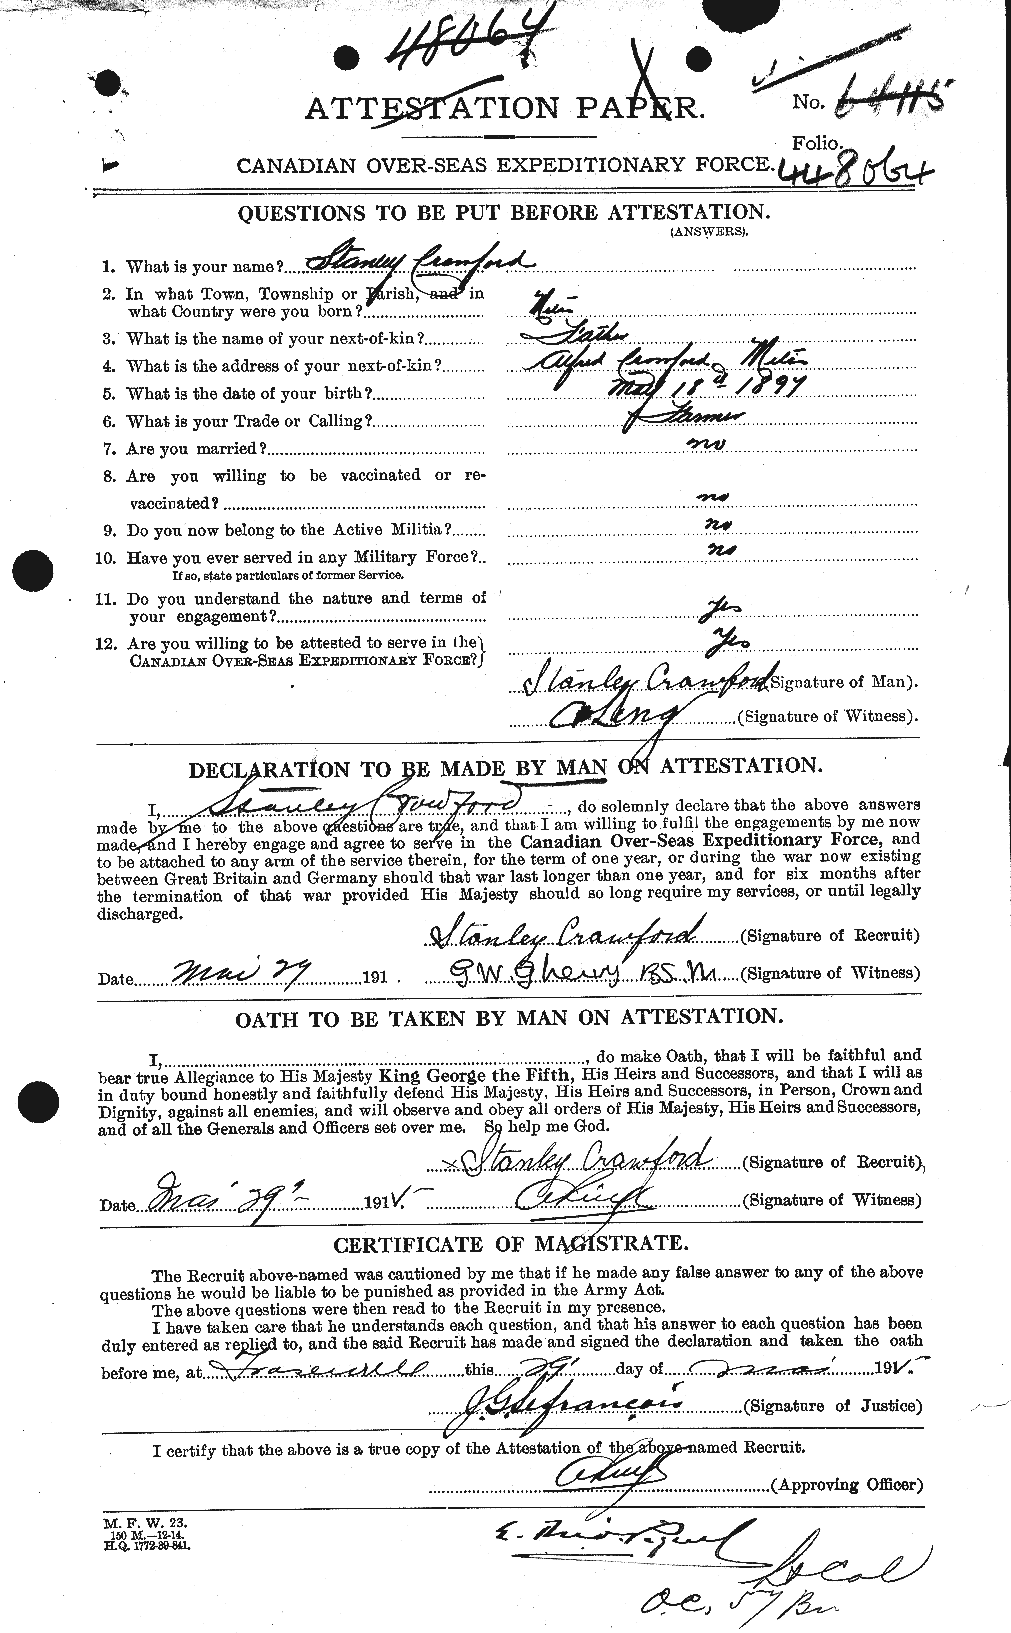 Dossiers du Personnel de la Première Guerre mondiale - CEC 061371a